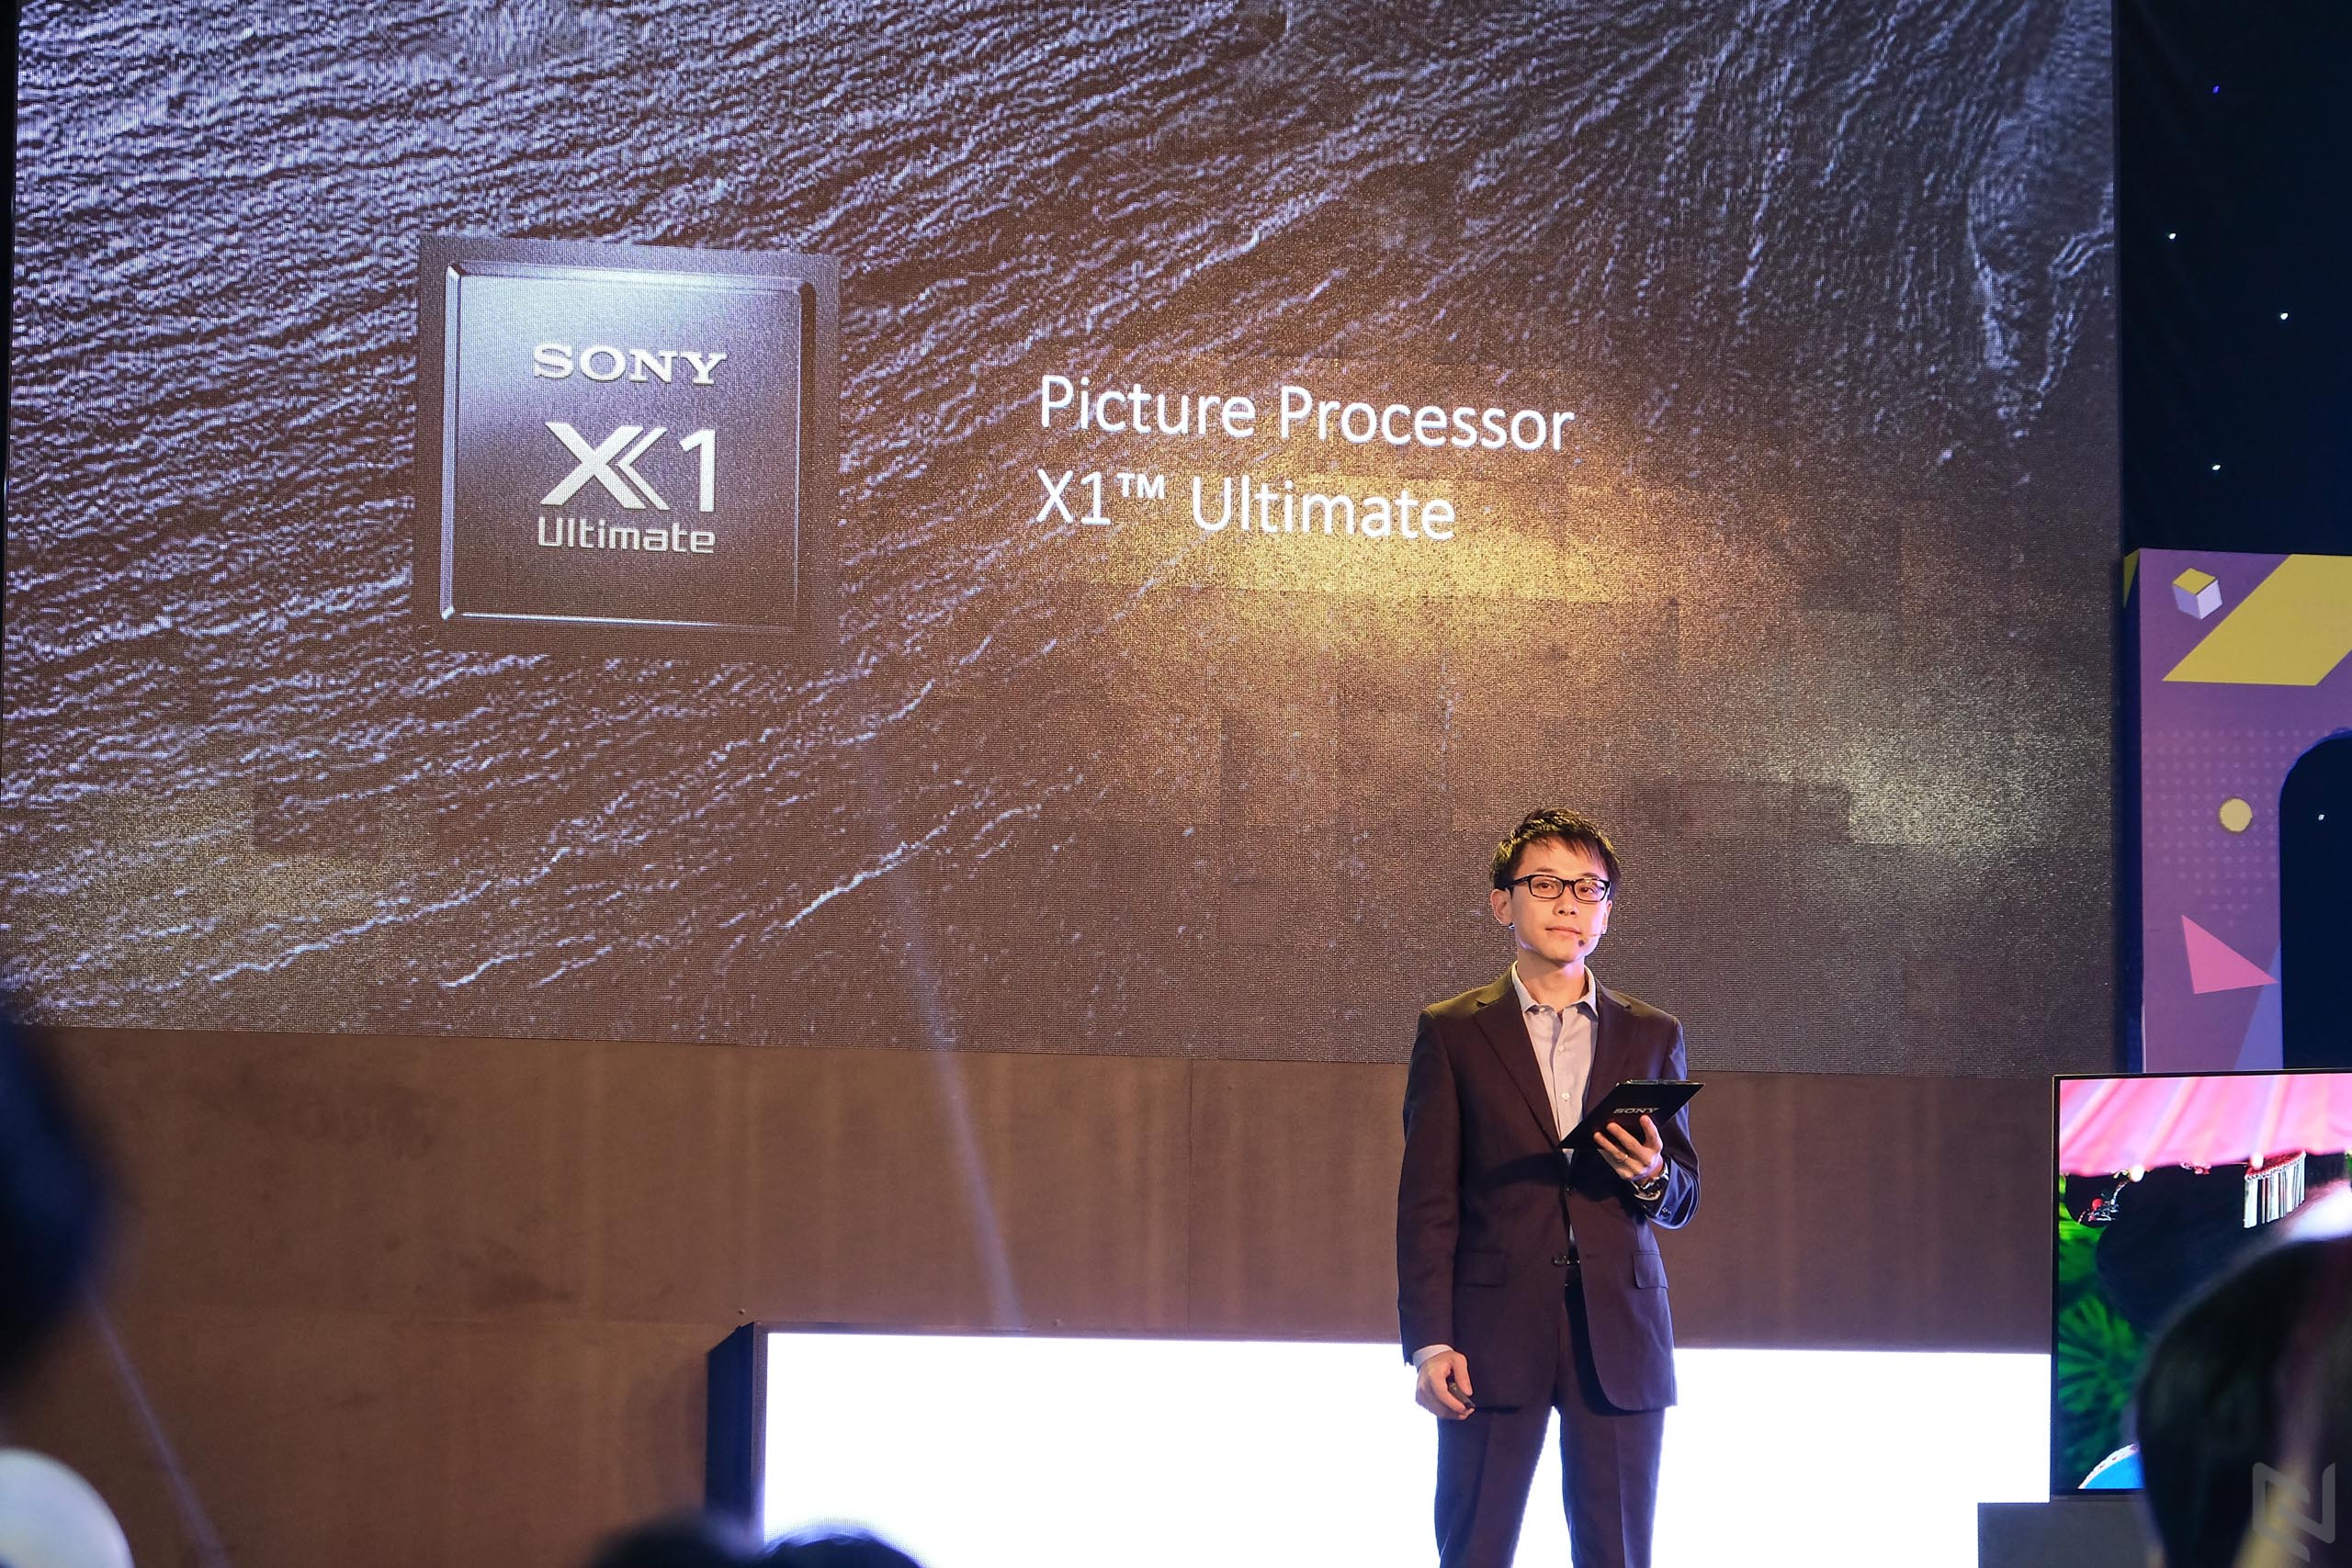 Sony ra mắt bộ đôi TV MASTER Series A9F và Z9F: Tuyệt phẩm tương phản đỉnh cao